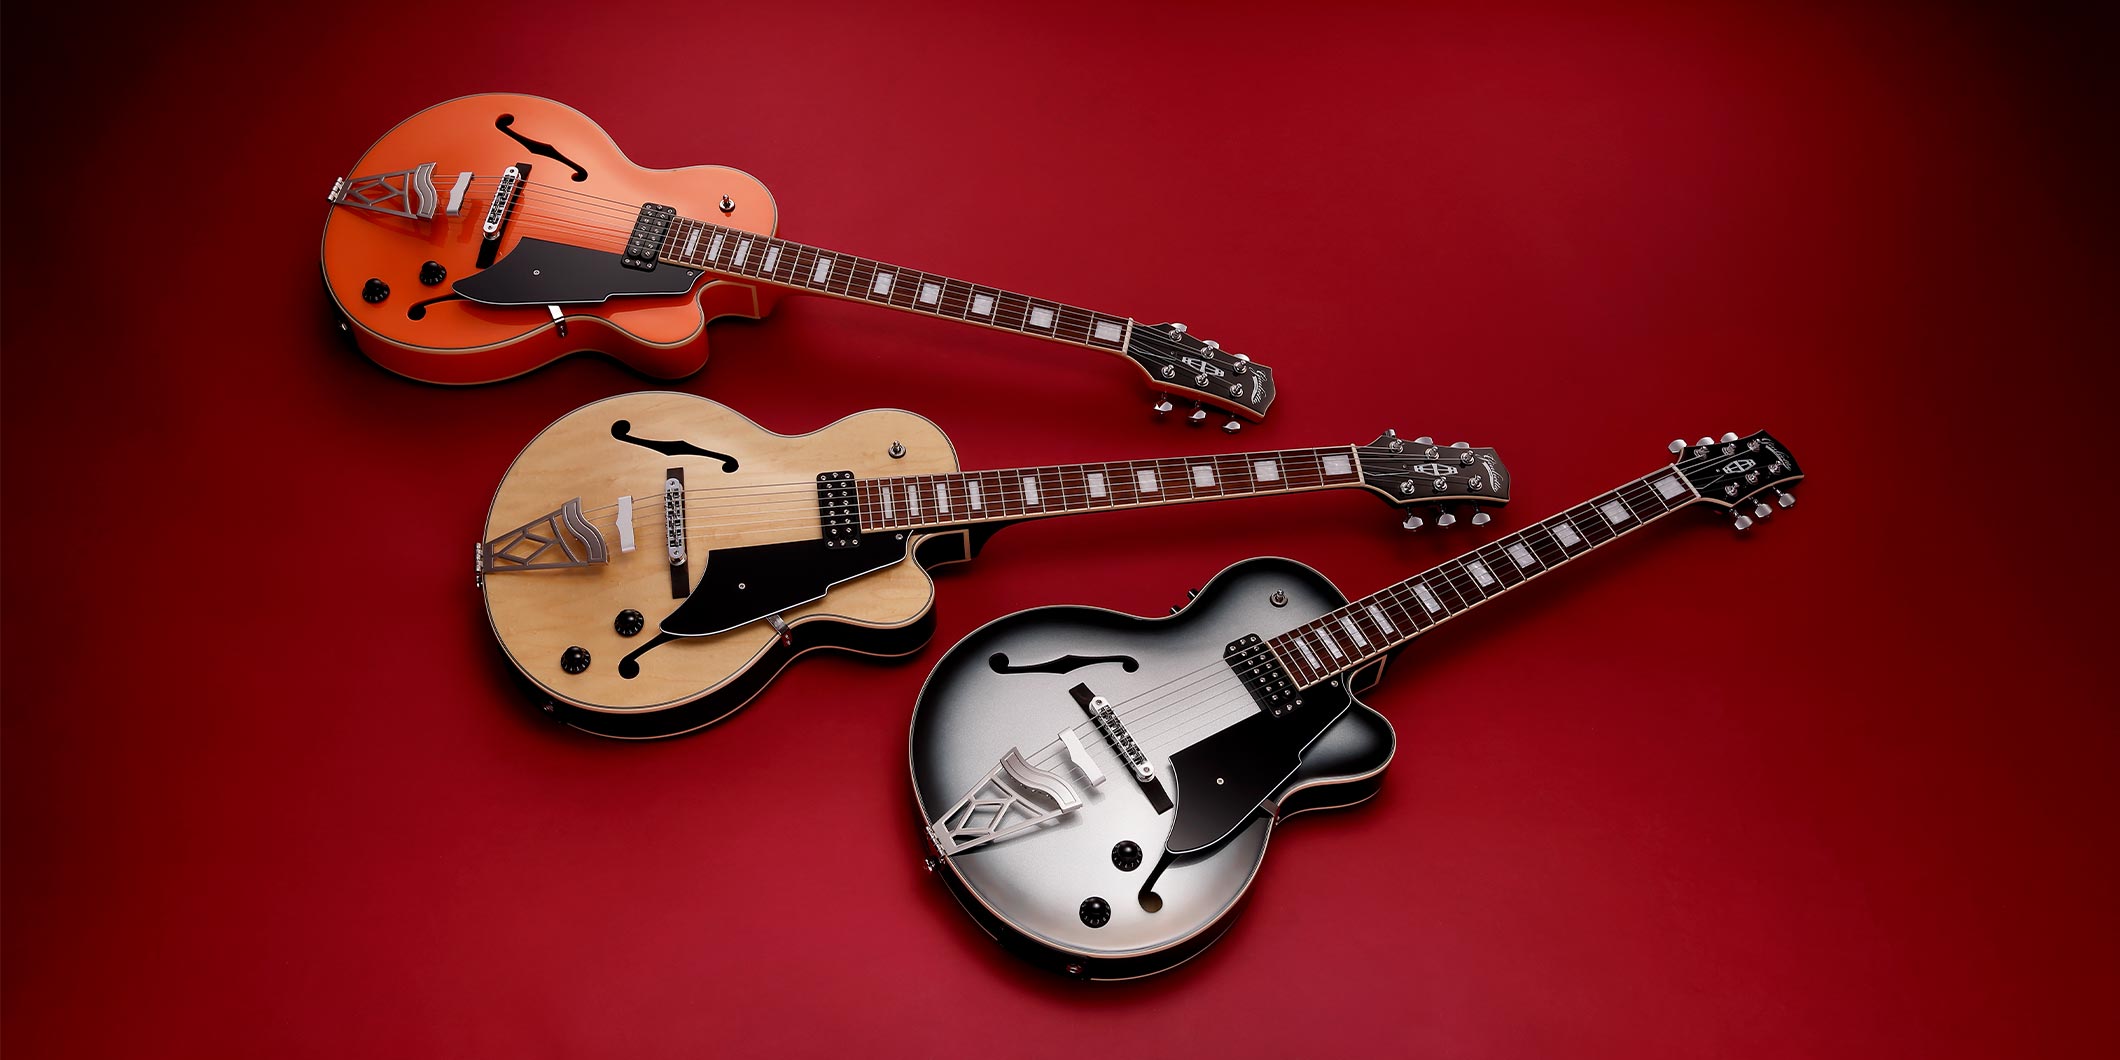 VOXより、デジタル・モデリング・システムを搭載したアーチトップ・ギター“Giulietta VGA-5TD”が発売